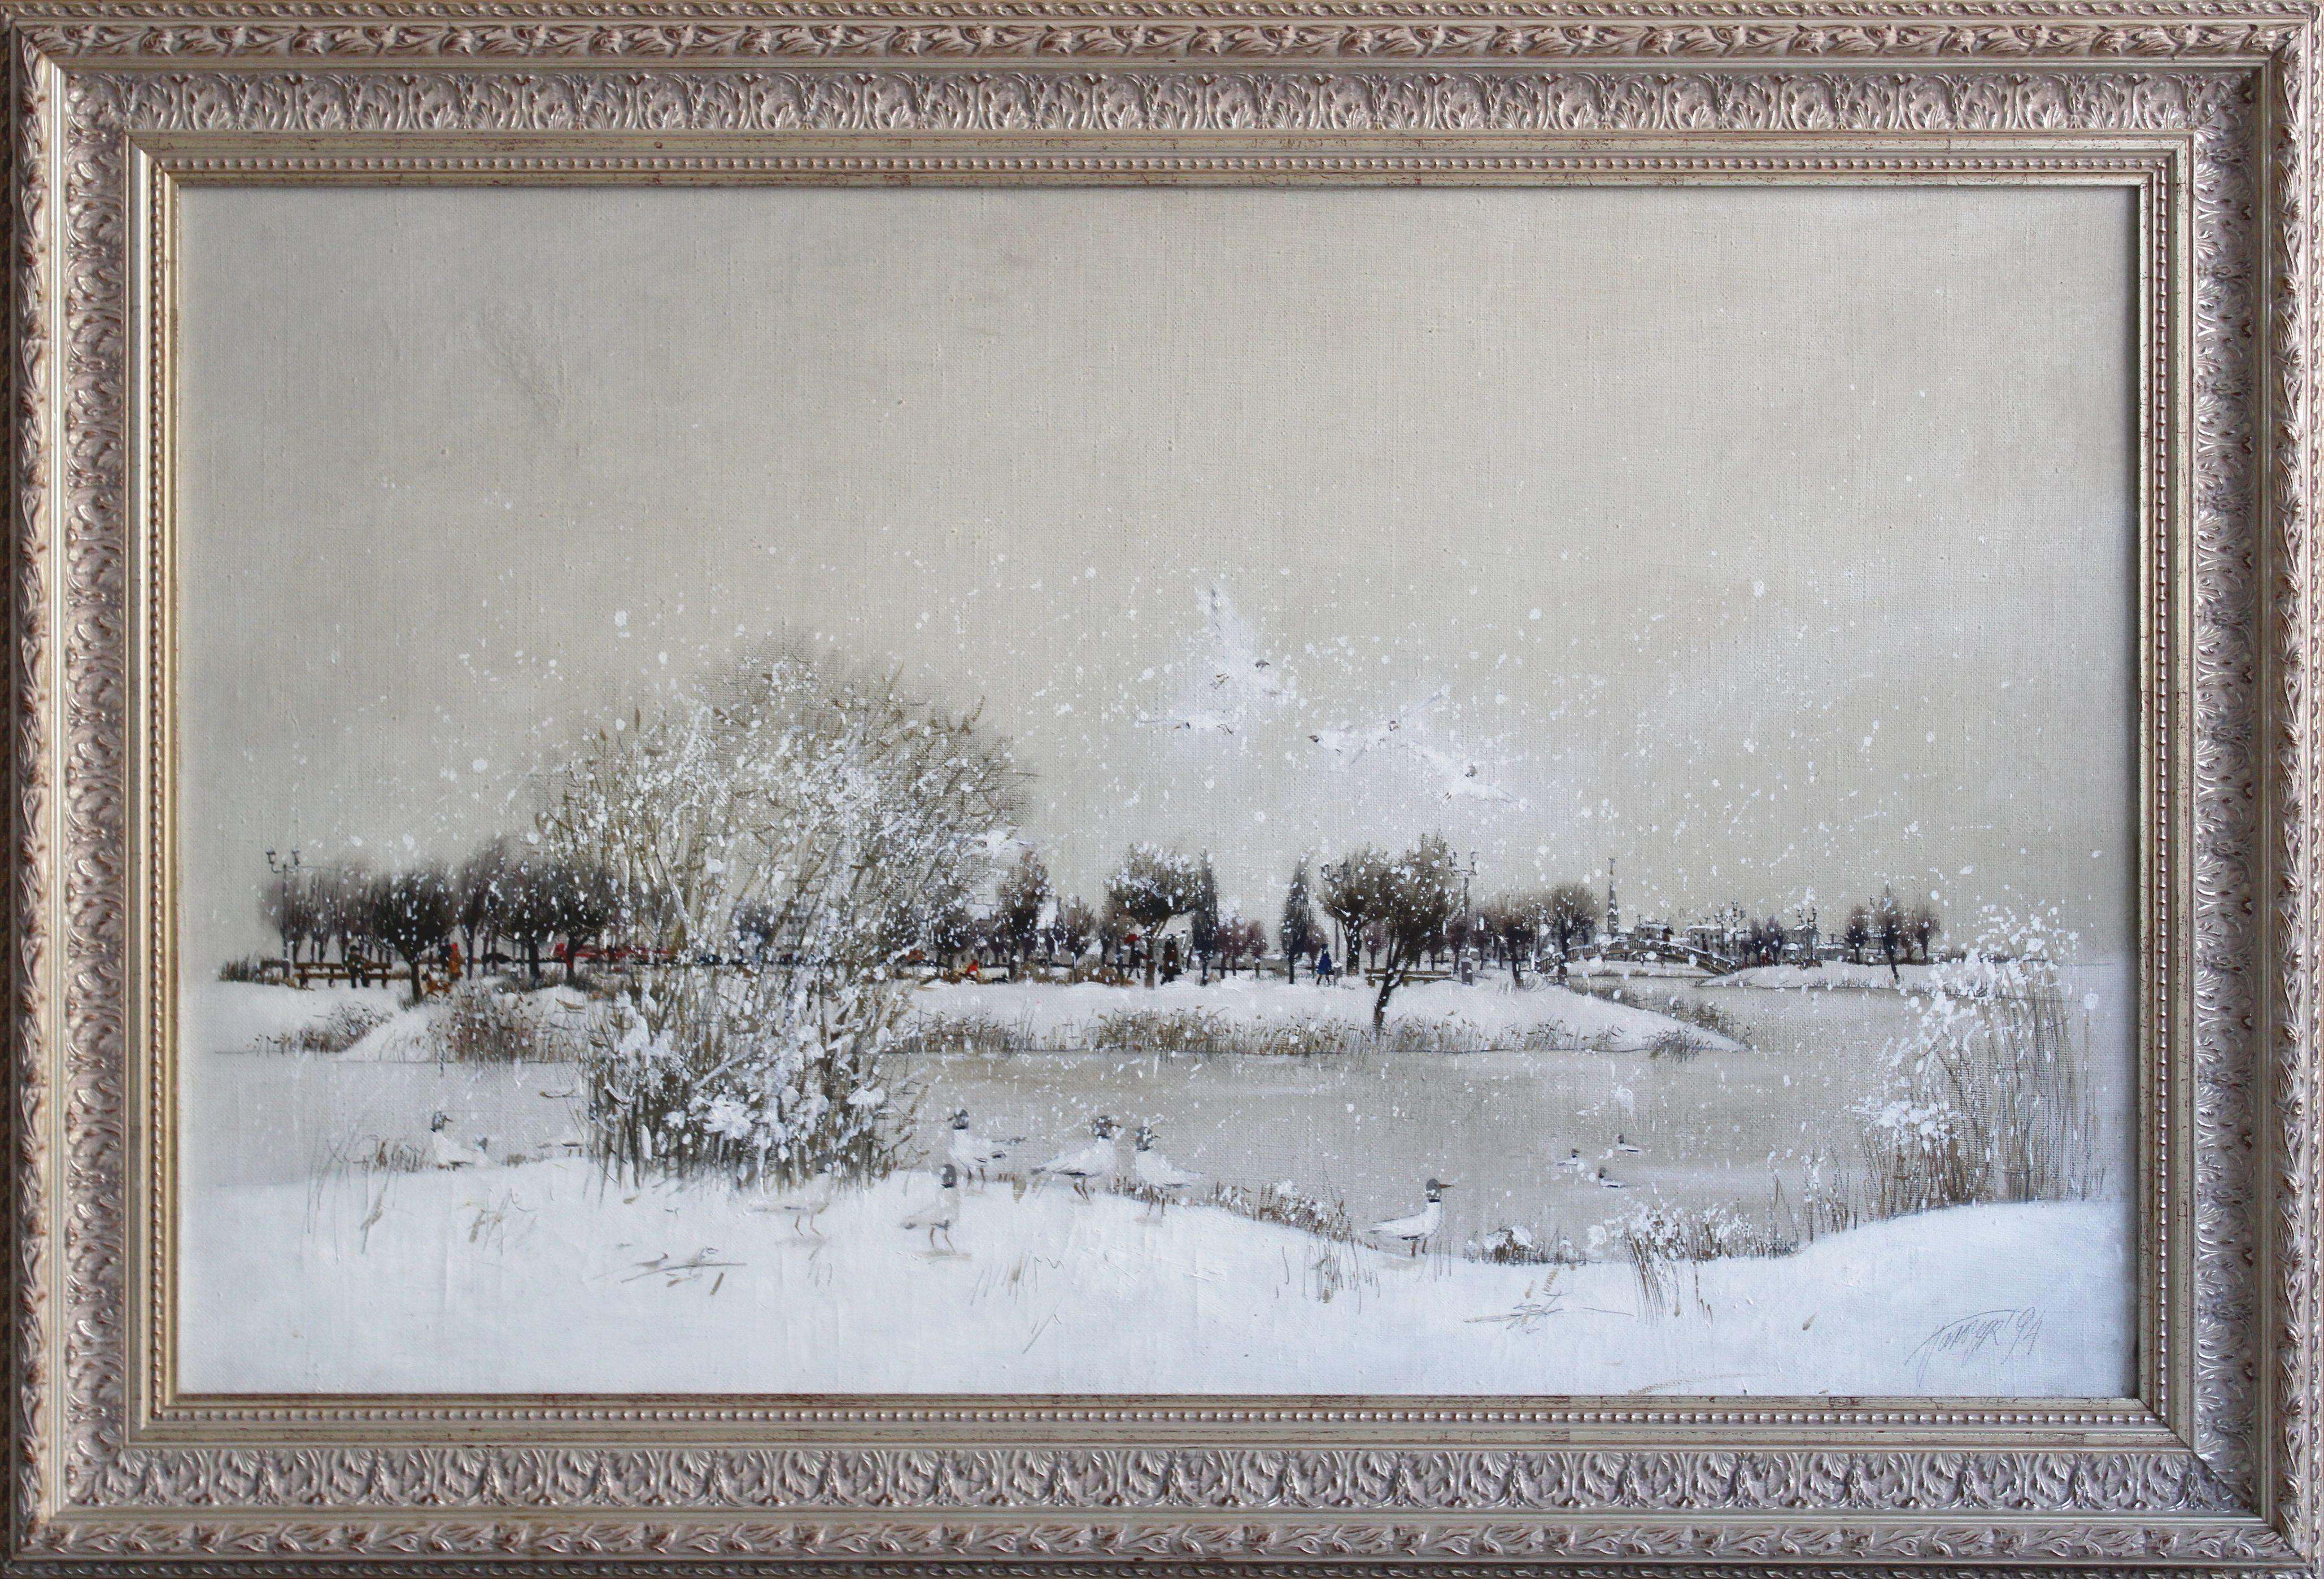 Mouettes de mer dans la neige. 1994. Toile, huile, 70 x112 cm - Painting de Tatyana Palchuk